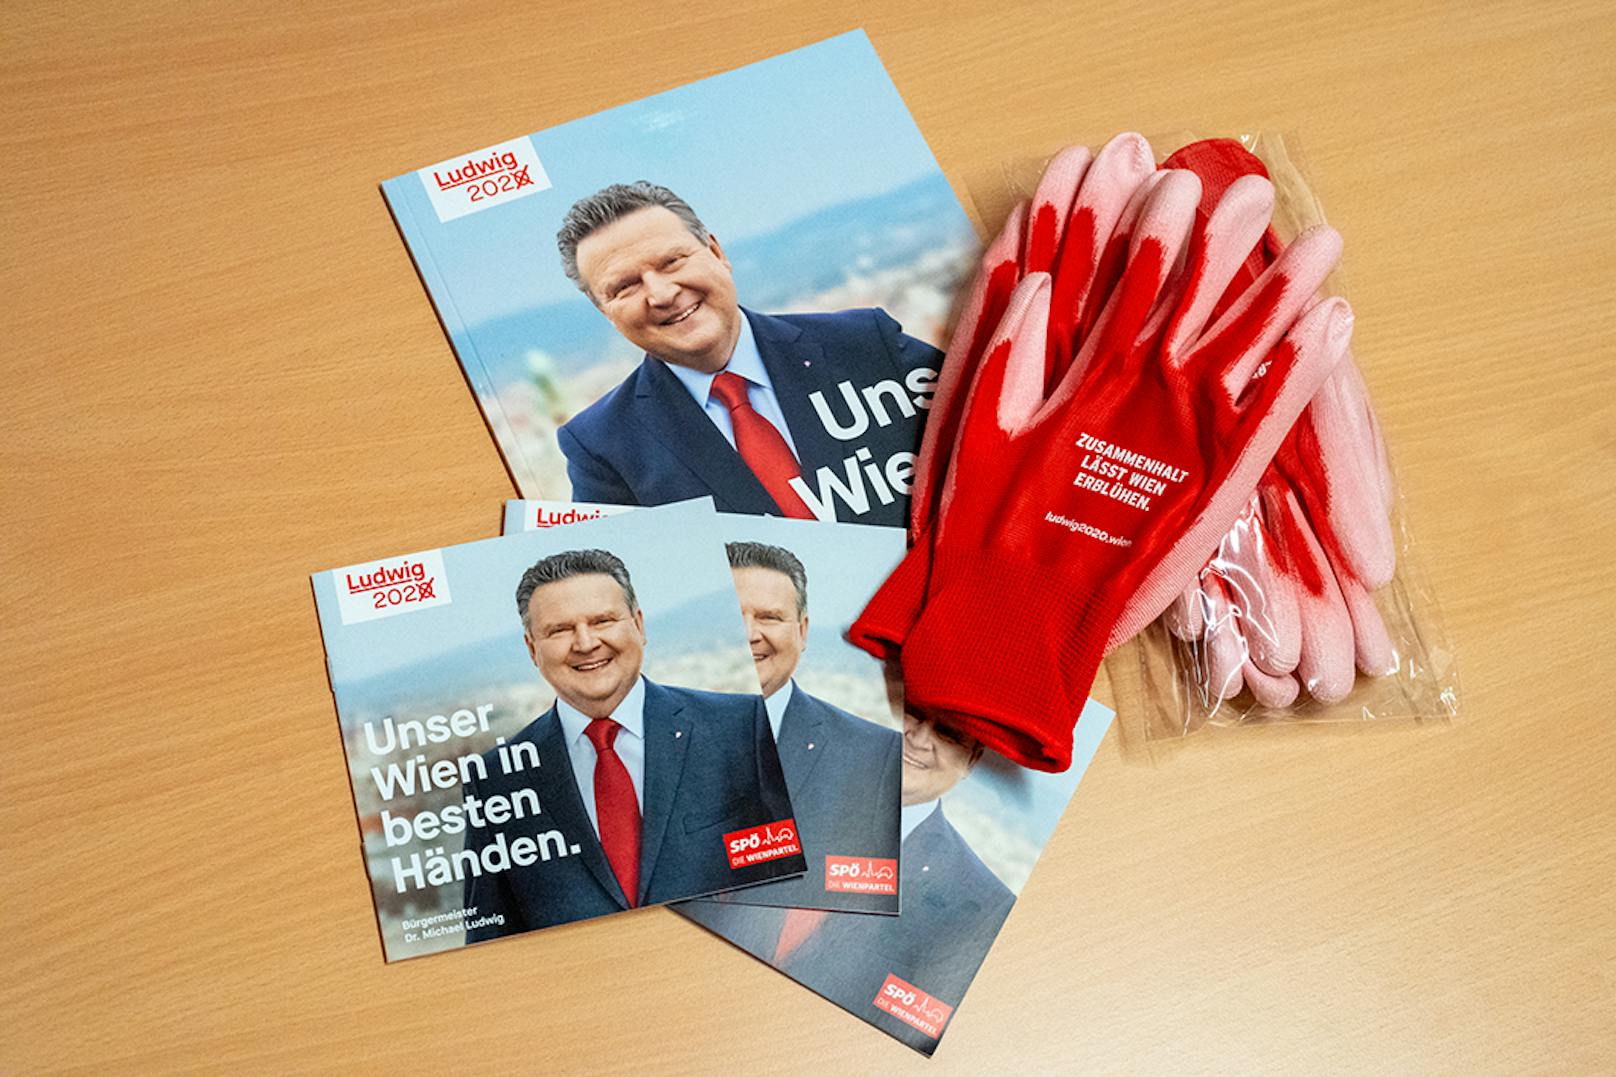 Dazu gibt es bei den SPÖ passend zum Wahl-Slogan "Wien in den besten Händen" knallrote Arbeitshandschuhe.